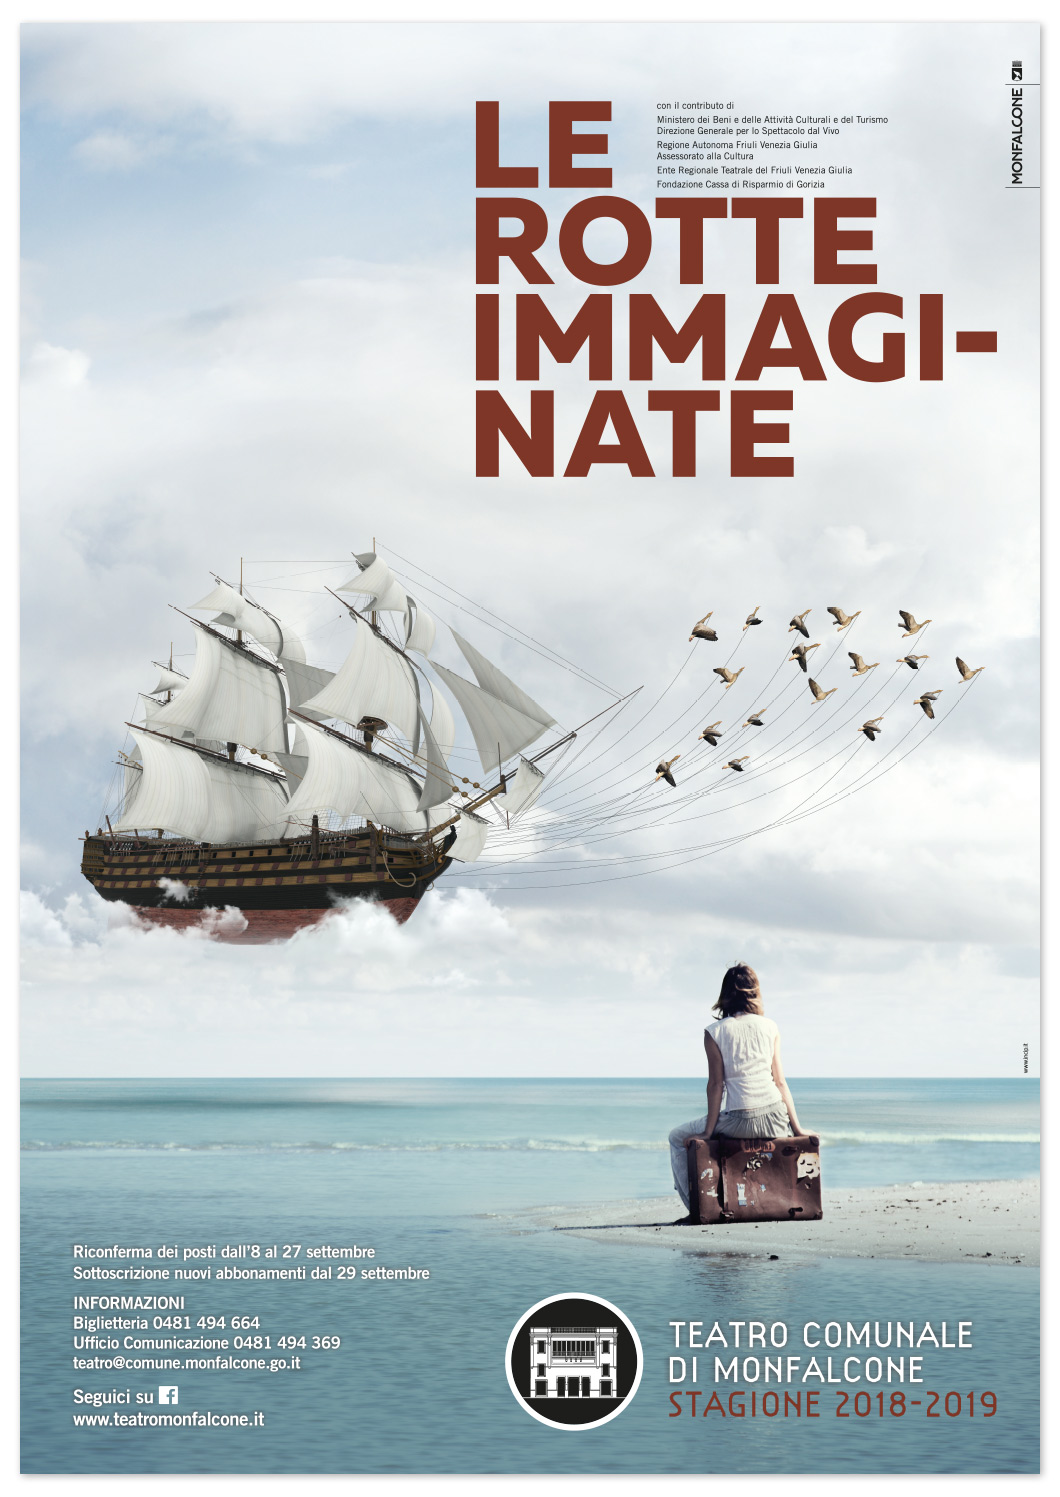 Teatro Comunale di Monfalcone: Le rotte immaginate - Stagione 2018-2019